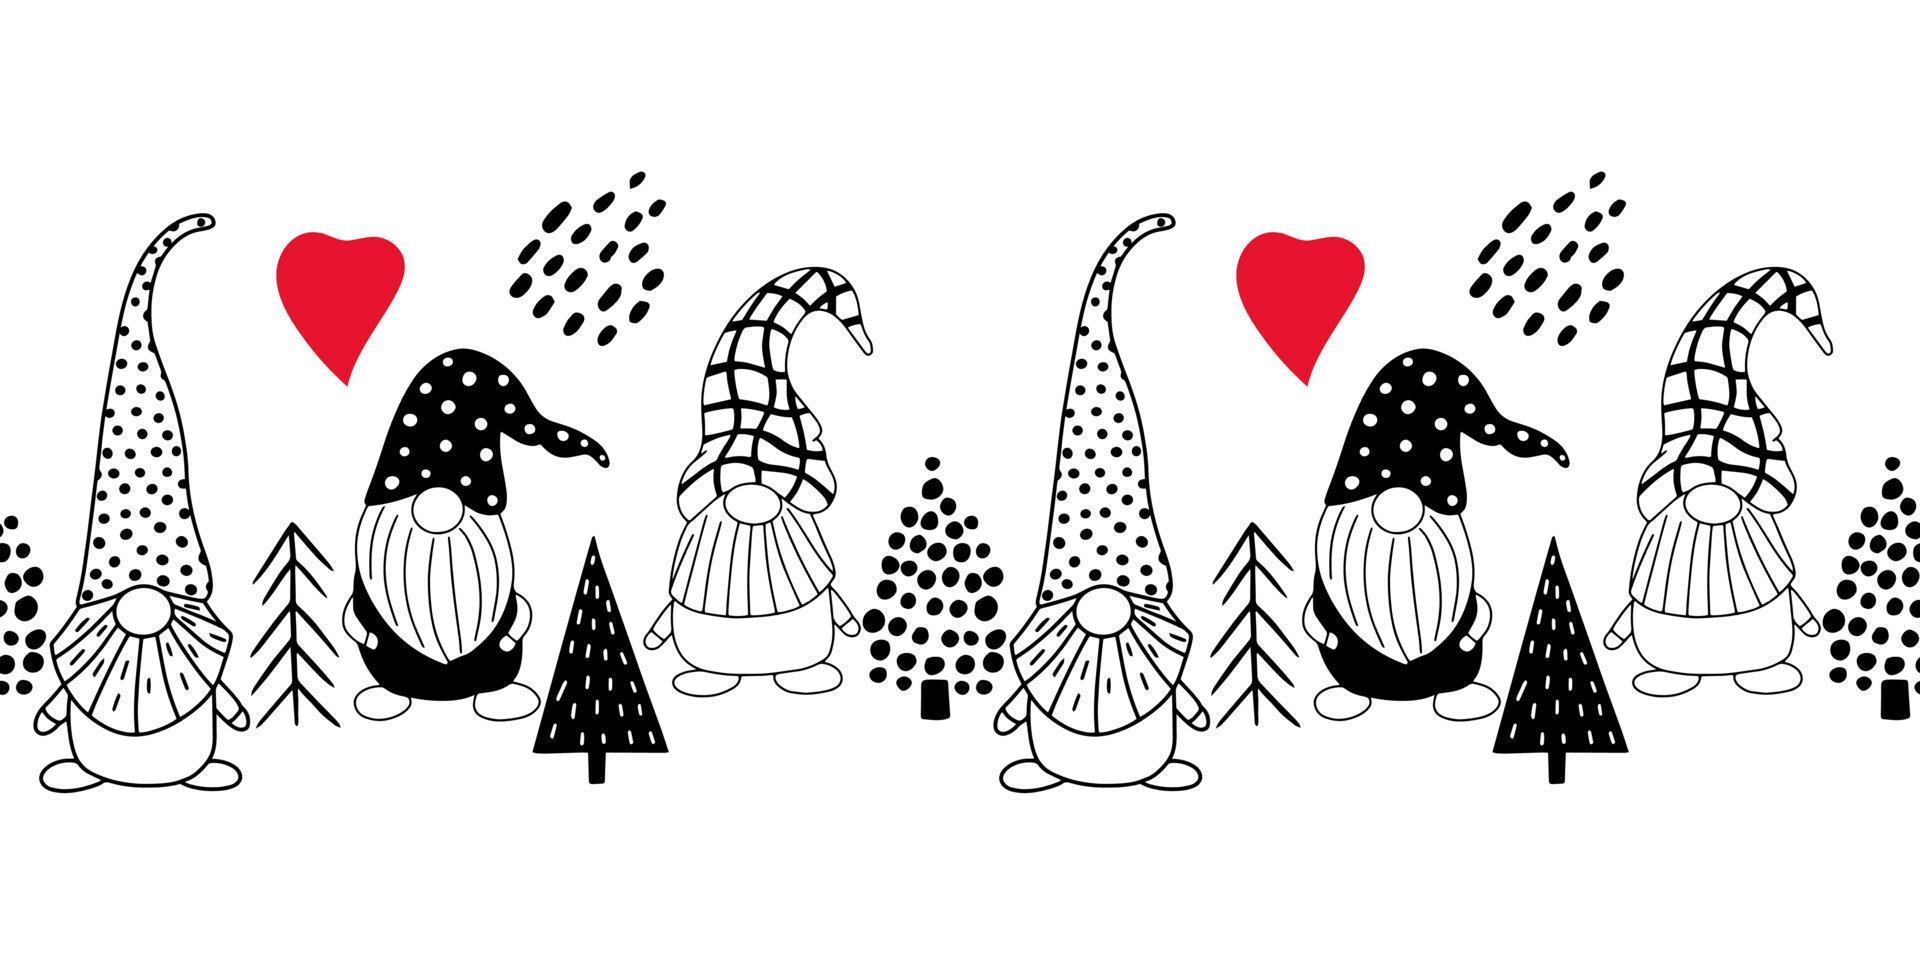 motif horizontal harmonieux avec de jolis gnomes dessinés à la main et des arbres de noël. un fond de vecteur de style scandinave d'éléments de doodle